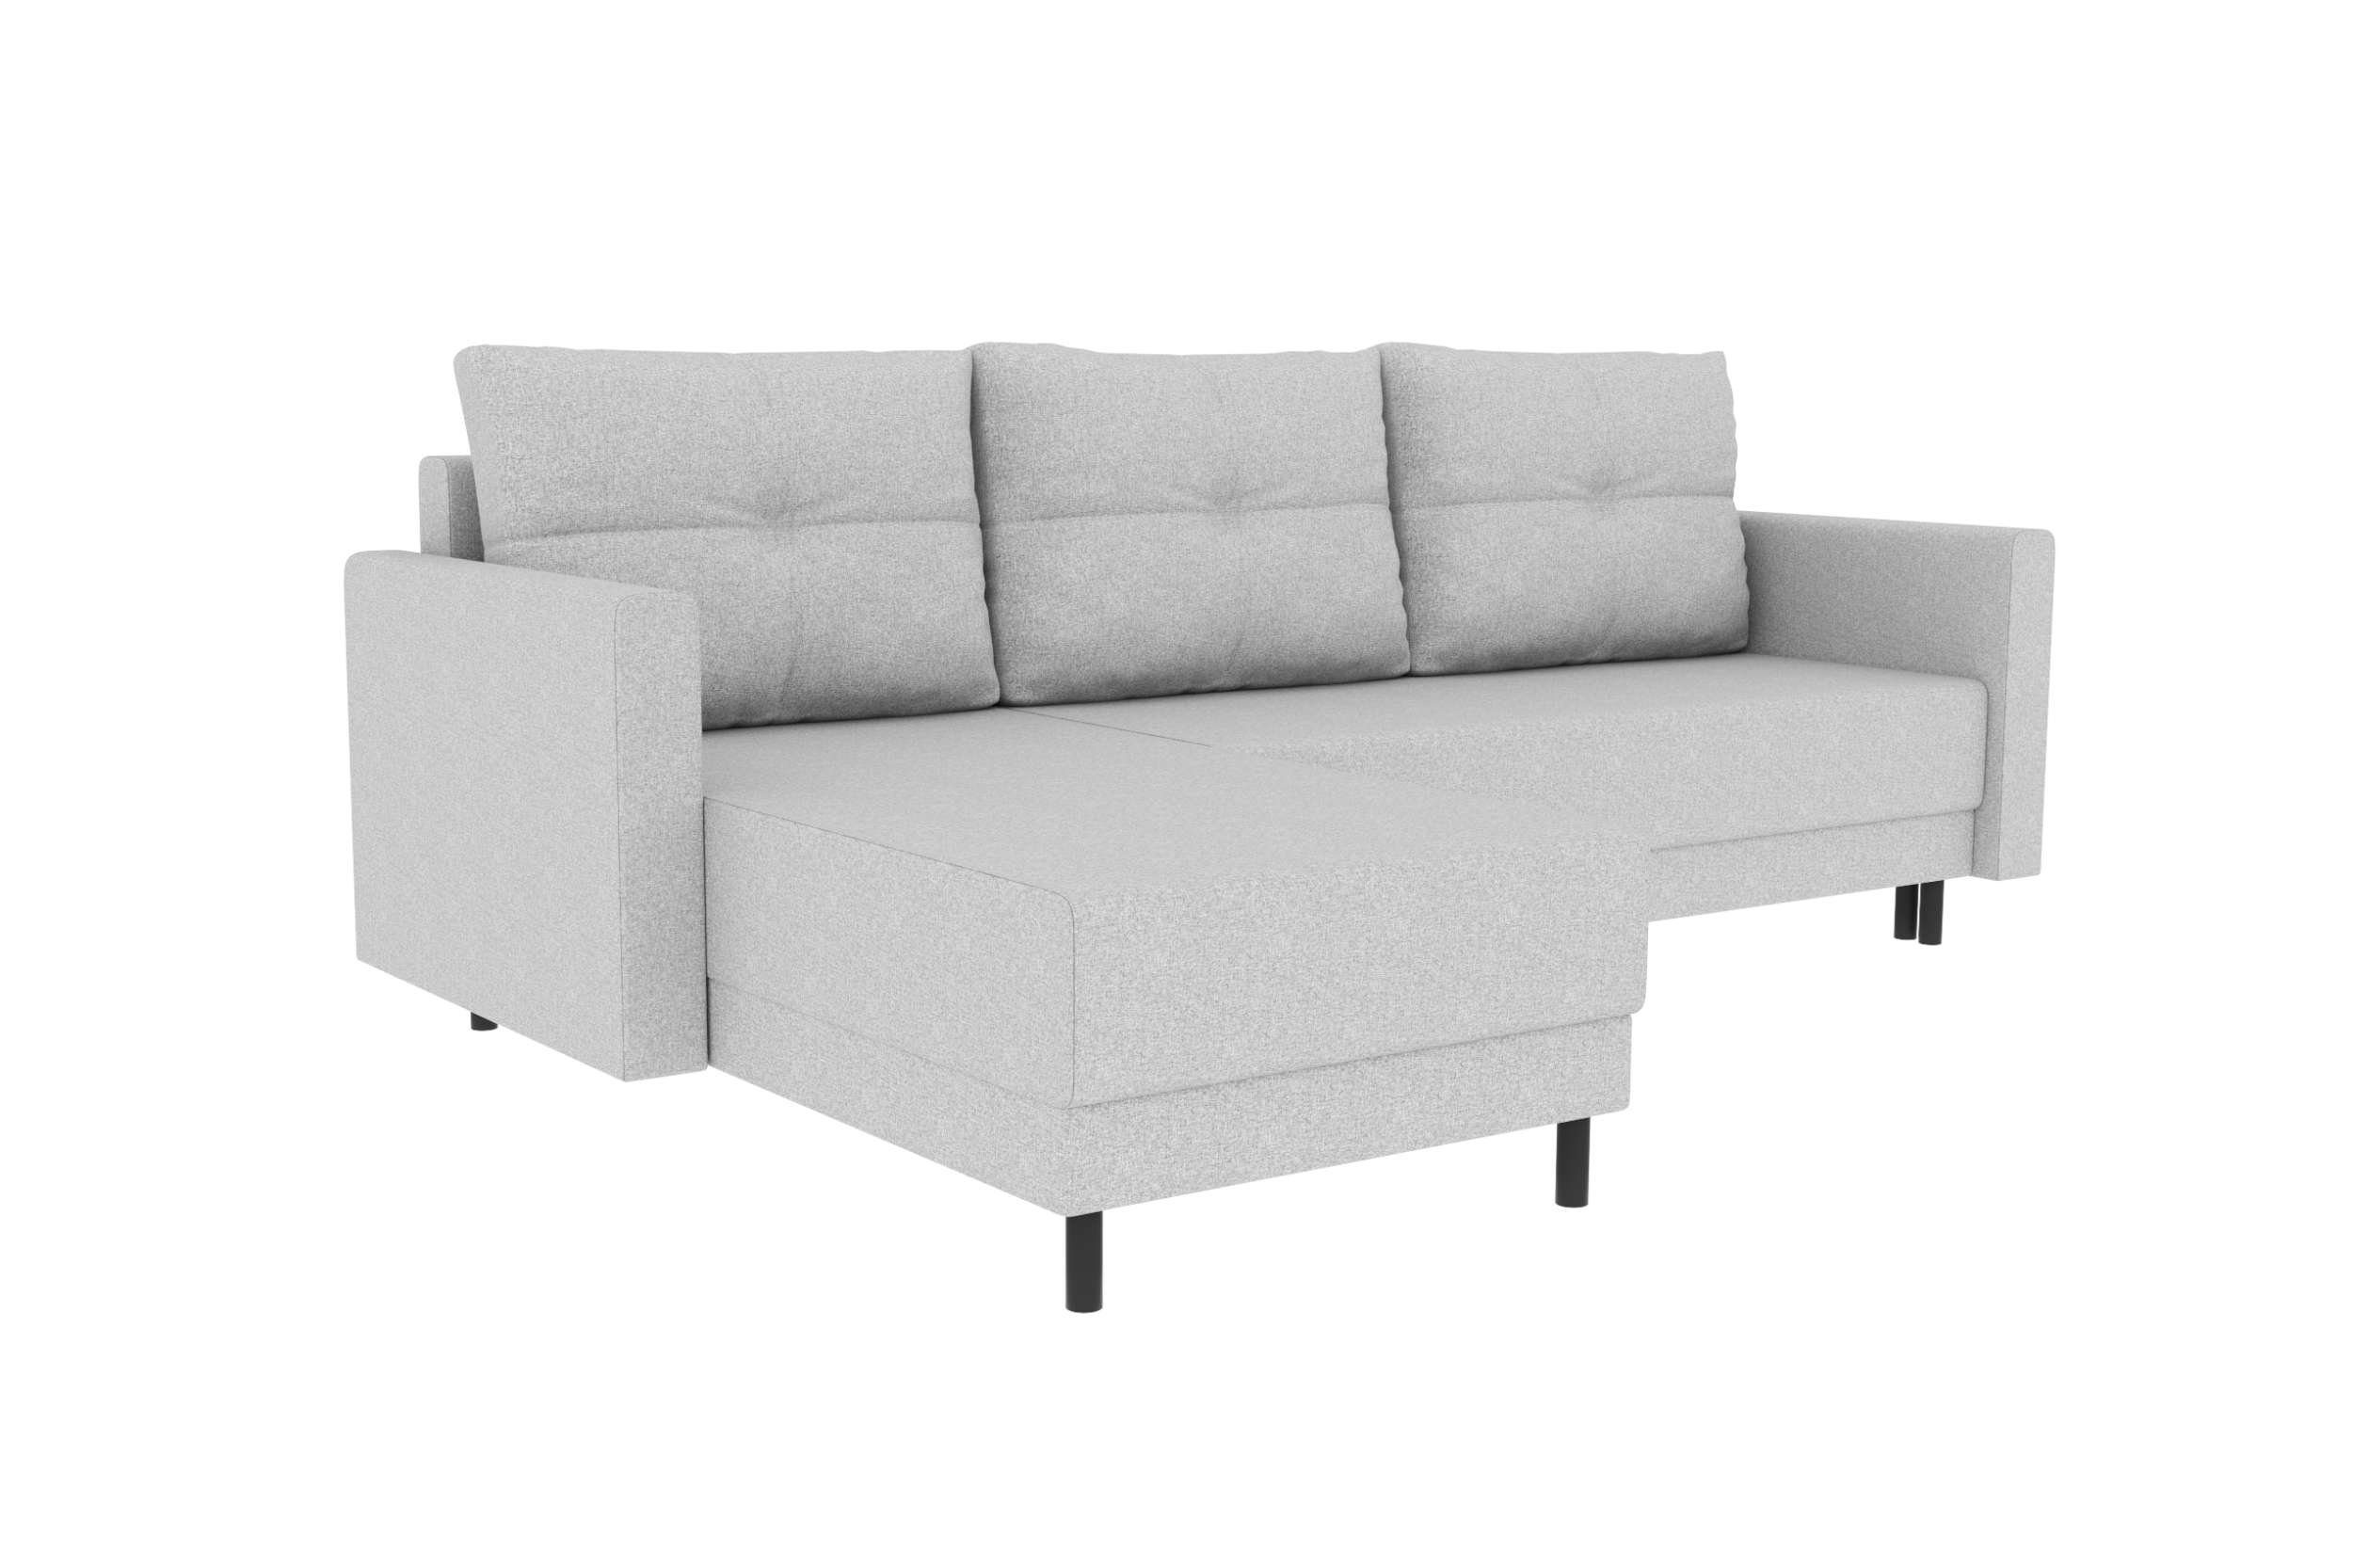 mit Modern Ecksofa Bettkasten, Paloma, L-Form, Sitzkomfort, Sofa, mit Bettfunktion, Stylefy Design Eckcouch,